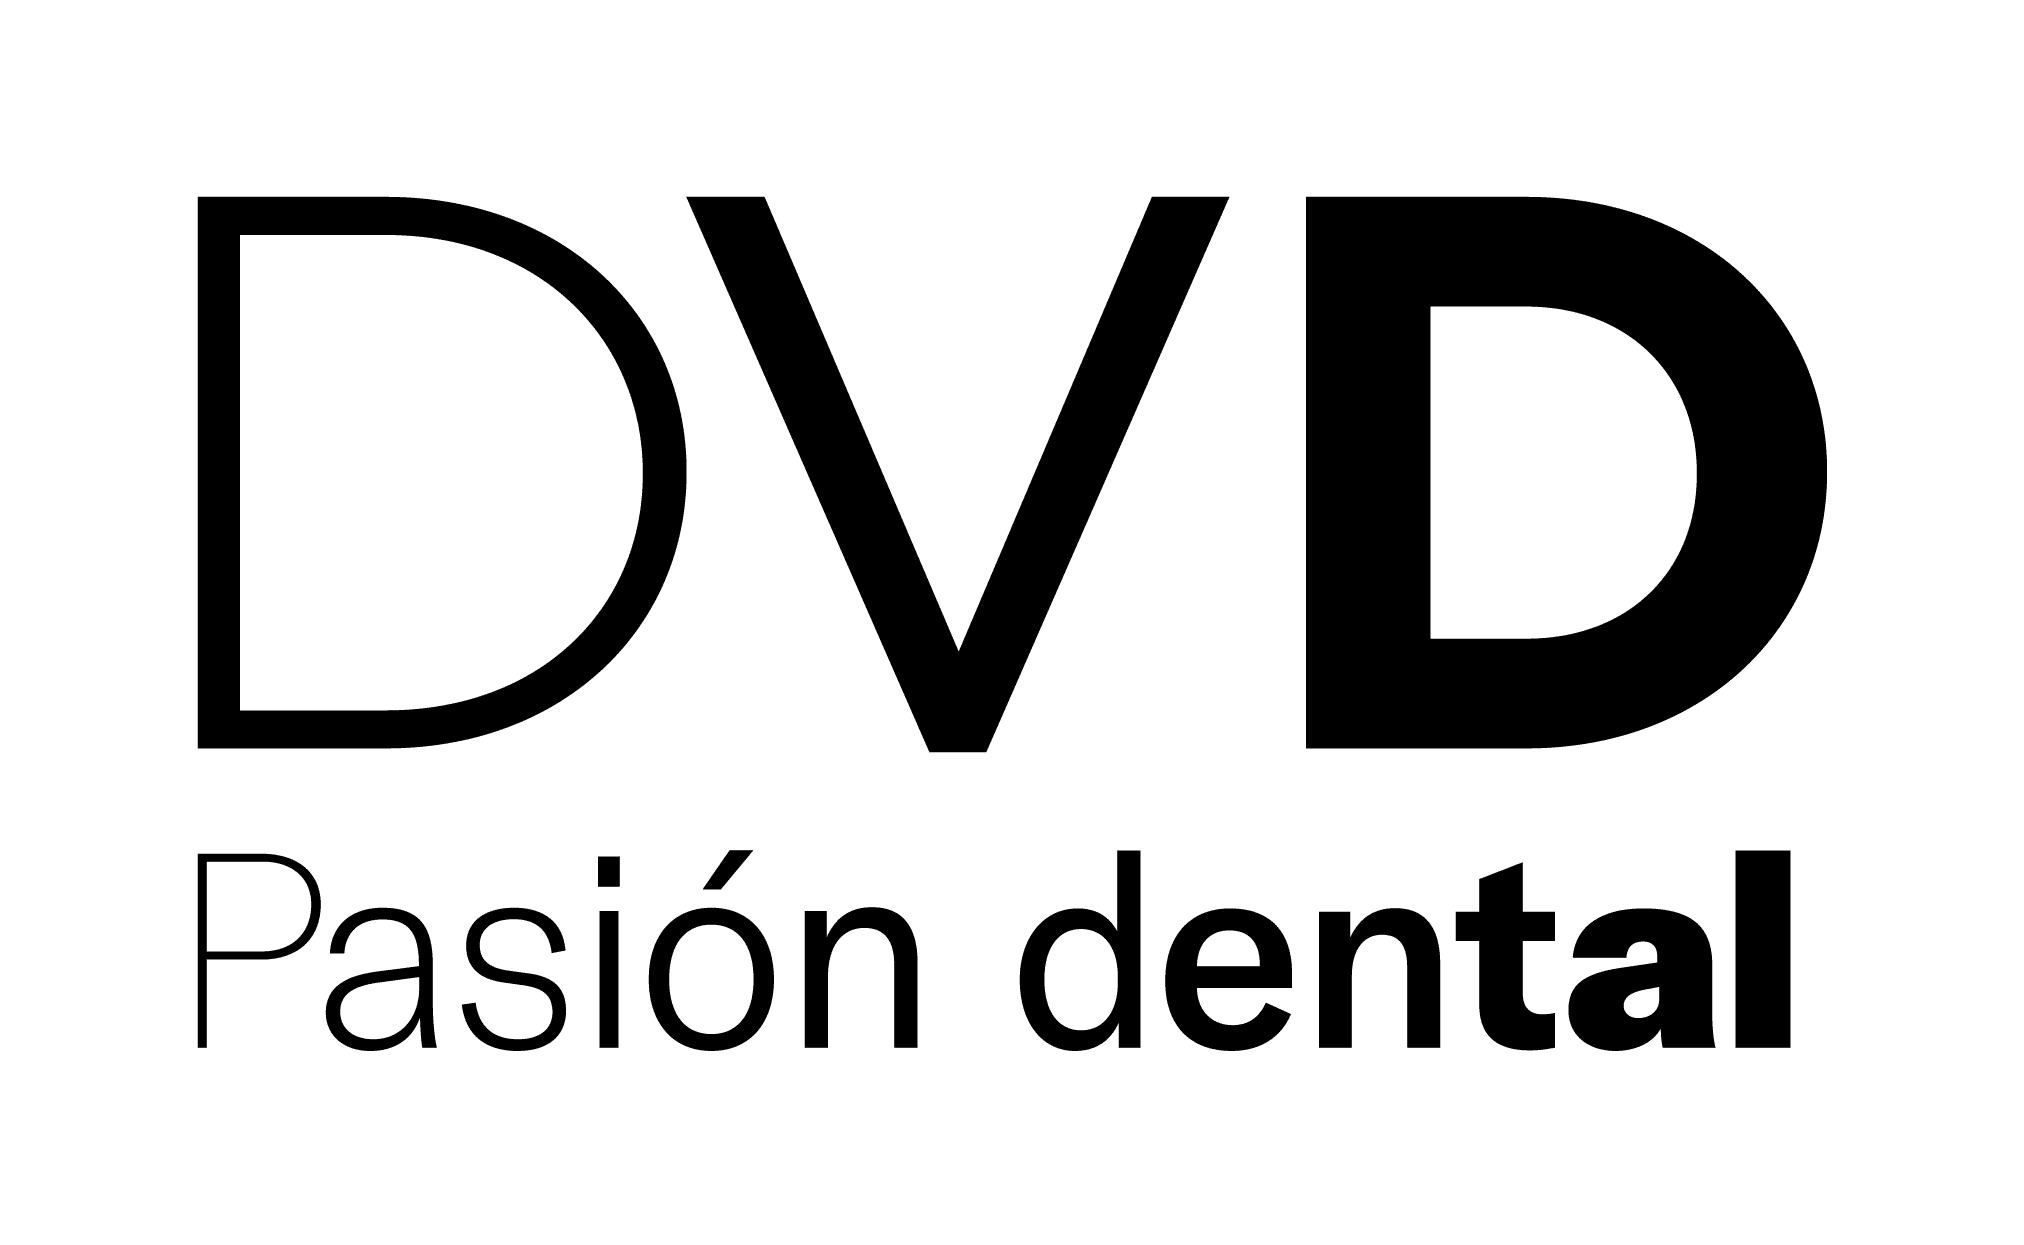 Depósito dental online - DVD Dental